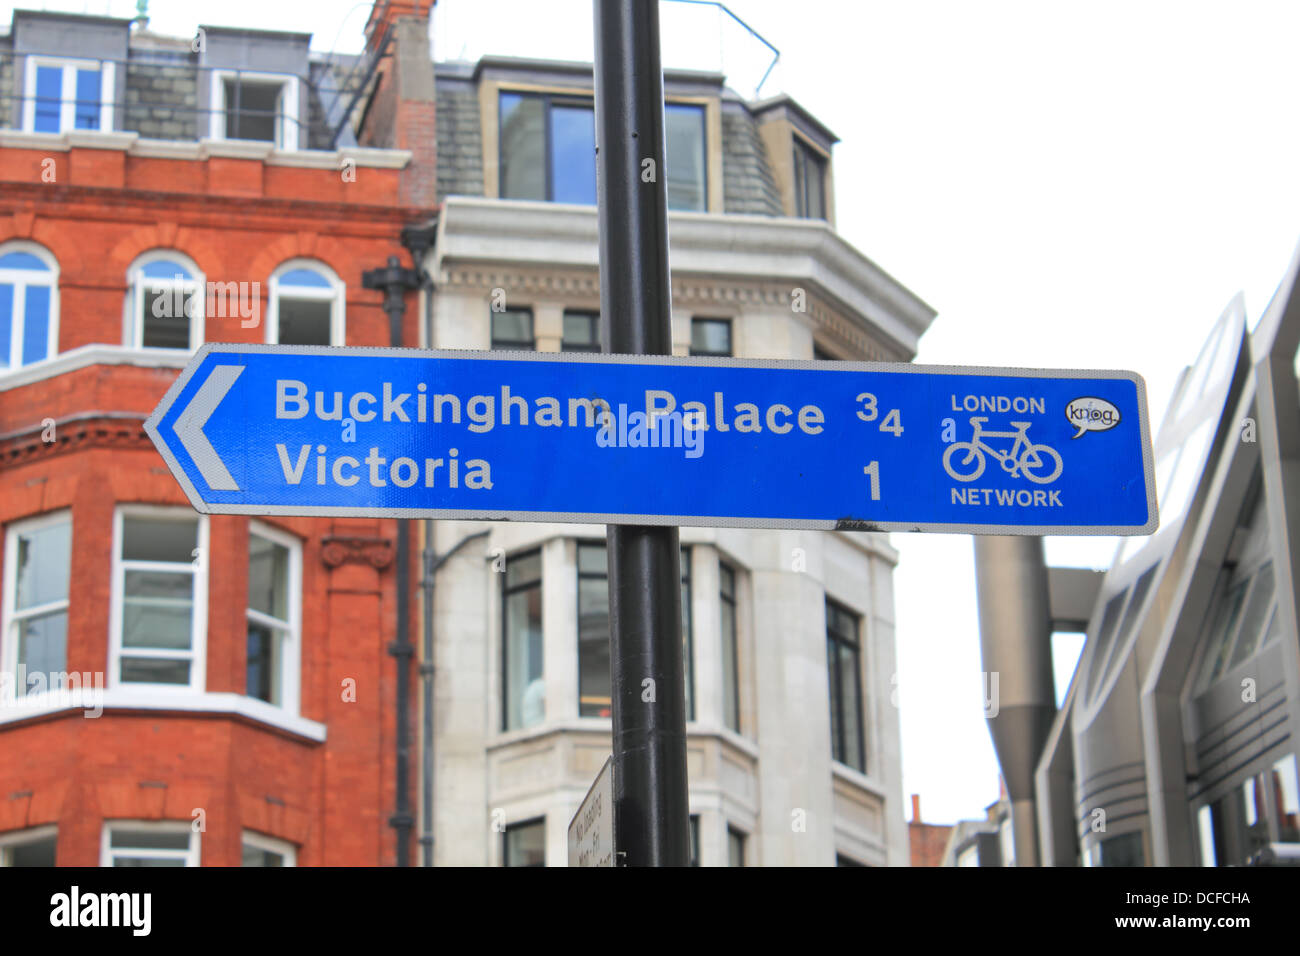 Réseau London cycling route signer avec la direction et la distance à Buckingham Palace et Victoria. London UK. Banque D'Images